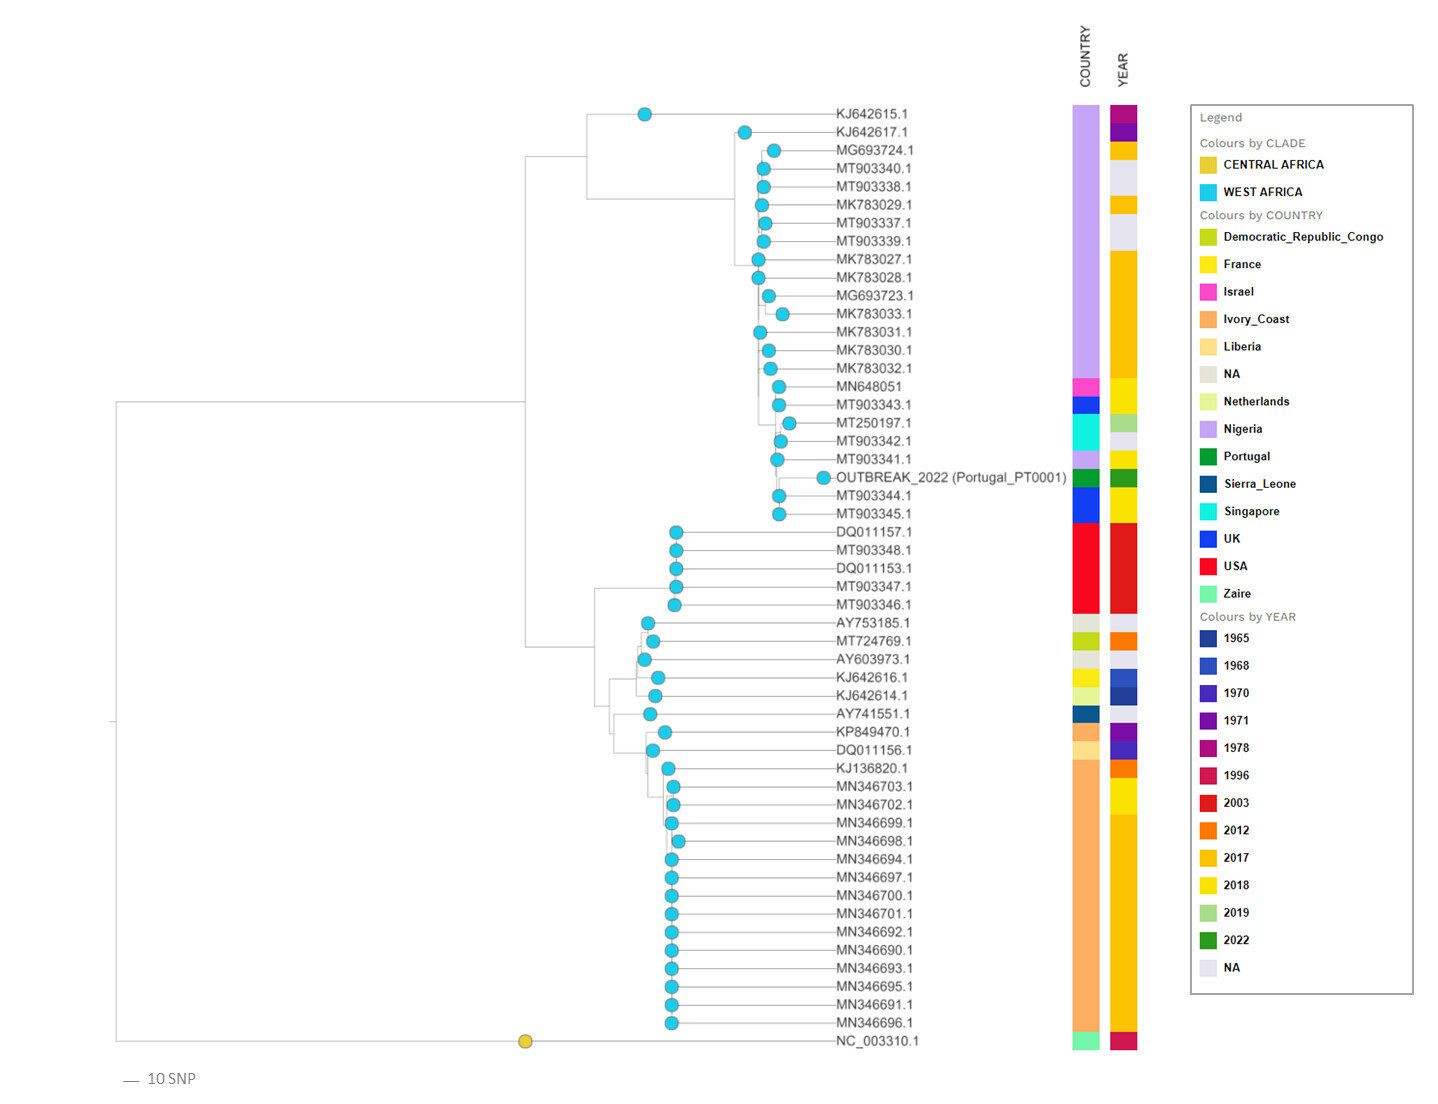 52 majomhimlő vírus evolúciós rokonsági kapcsolatait feltáró filogenetikai fa, benne a jelenlegi járványkitörést okozó, Portugáliában megszekvenált törzzsel